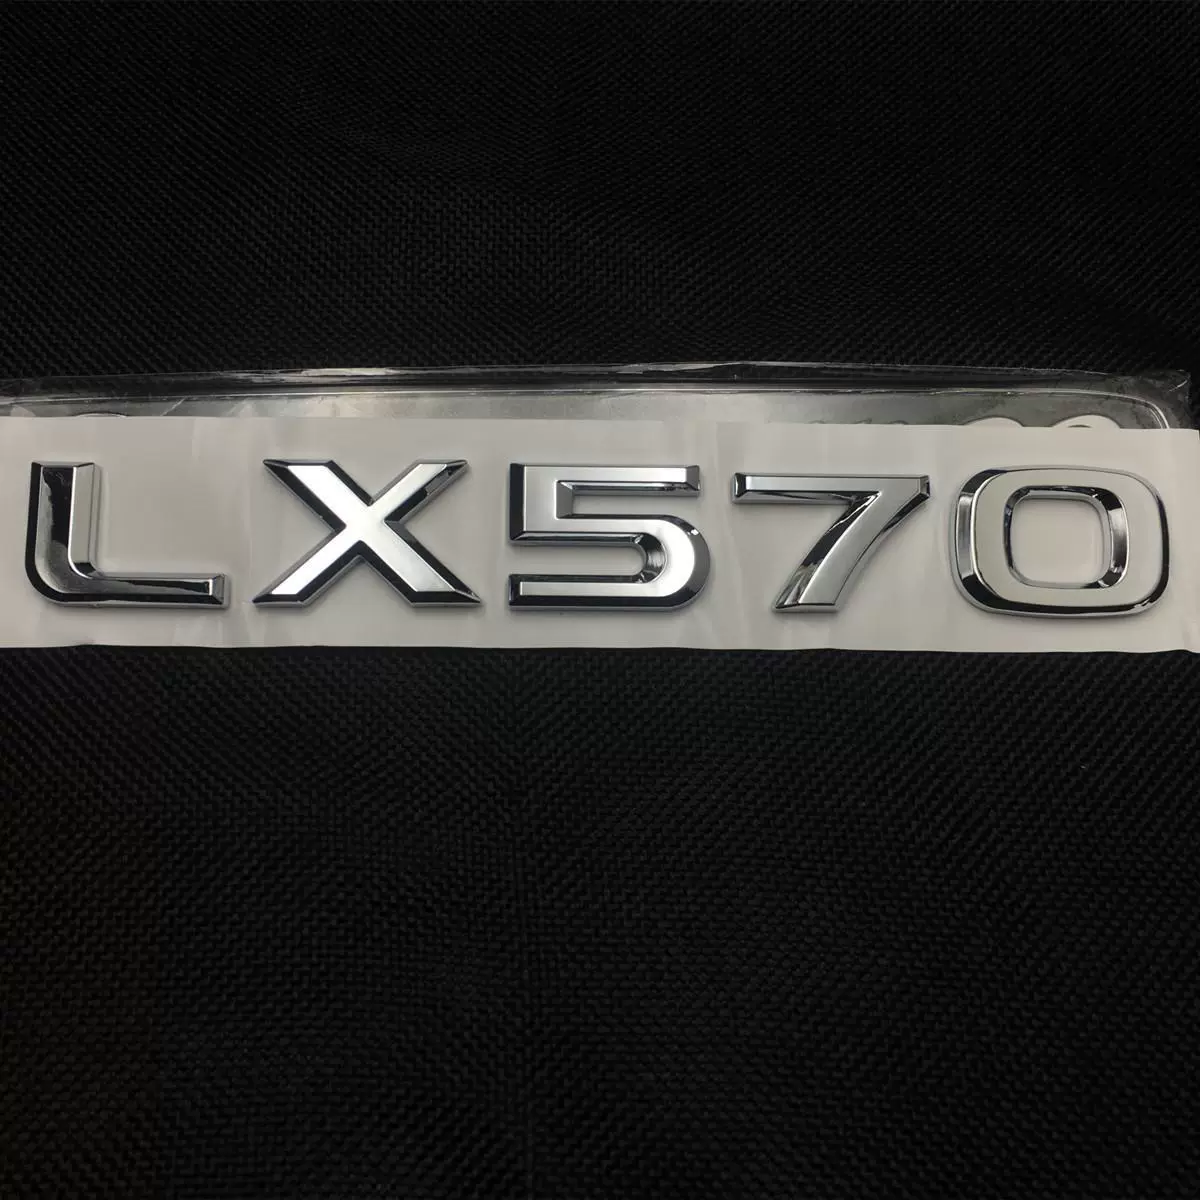 tem dán nắp capo xe ô tô Áp dụng cho Lexus LX570 Chữ điểm đánh dấu Tay lái xe gốc Tay điều khiển Tailgate Logo Lingzhi 570 Tiêu chuẩn sửa đổi decal dán xe ô to tải dán xe oto 